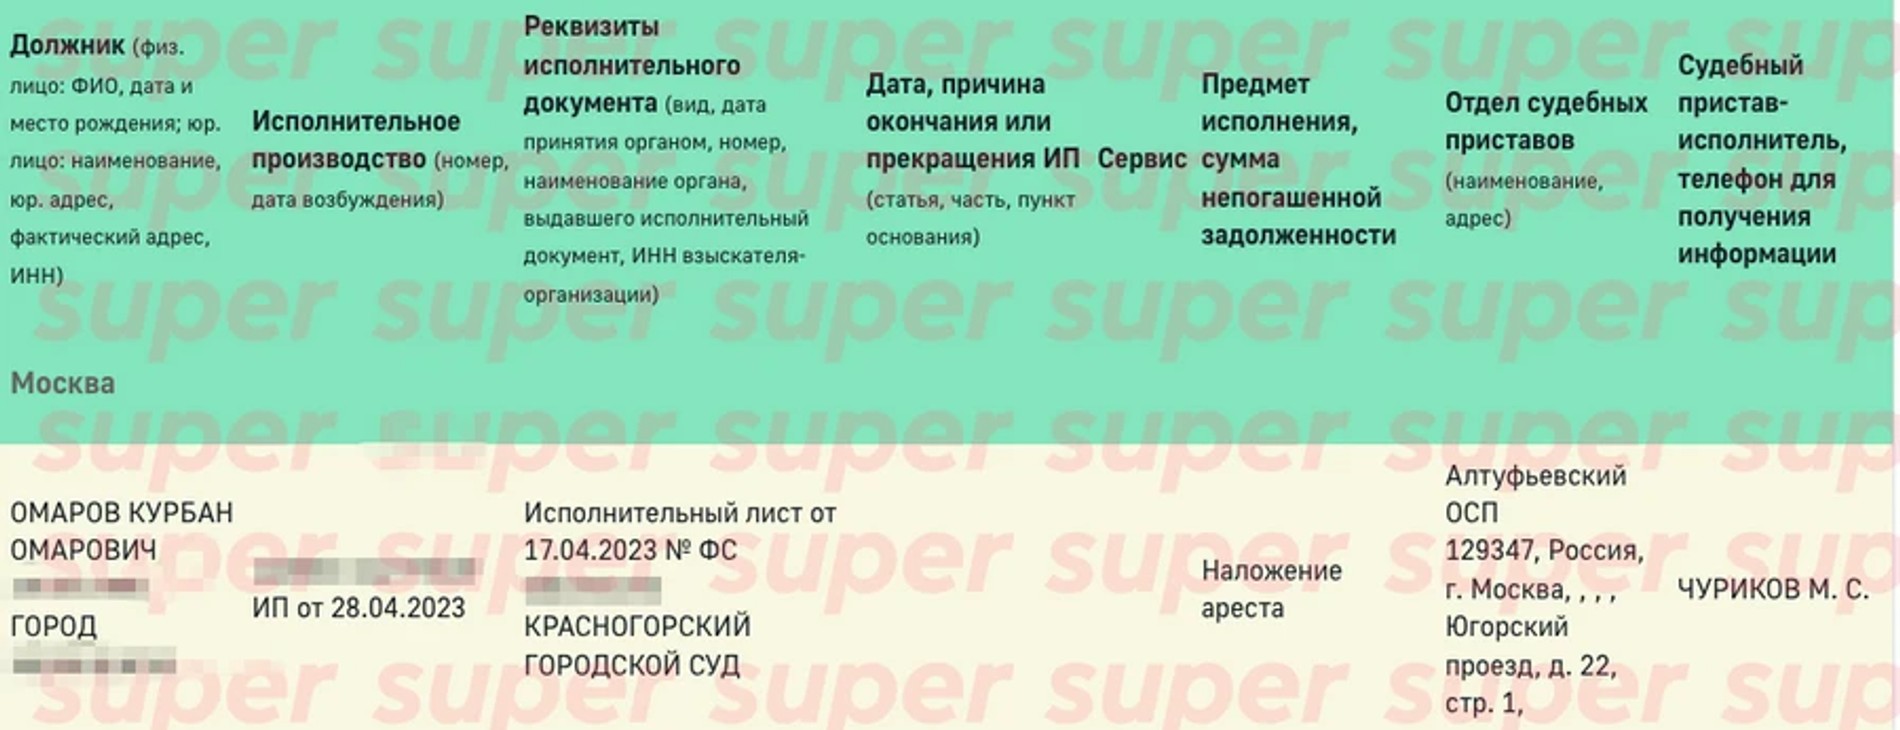 Курбан Омаров подробно рассказал, за что на него подали в суд и арестовали счета: эксклюзив Super